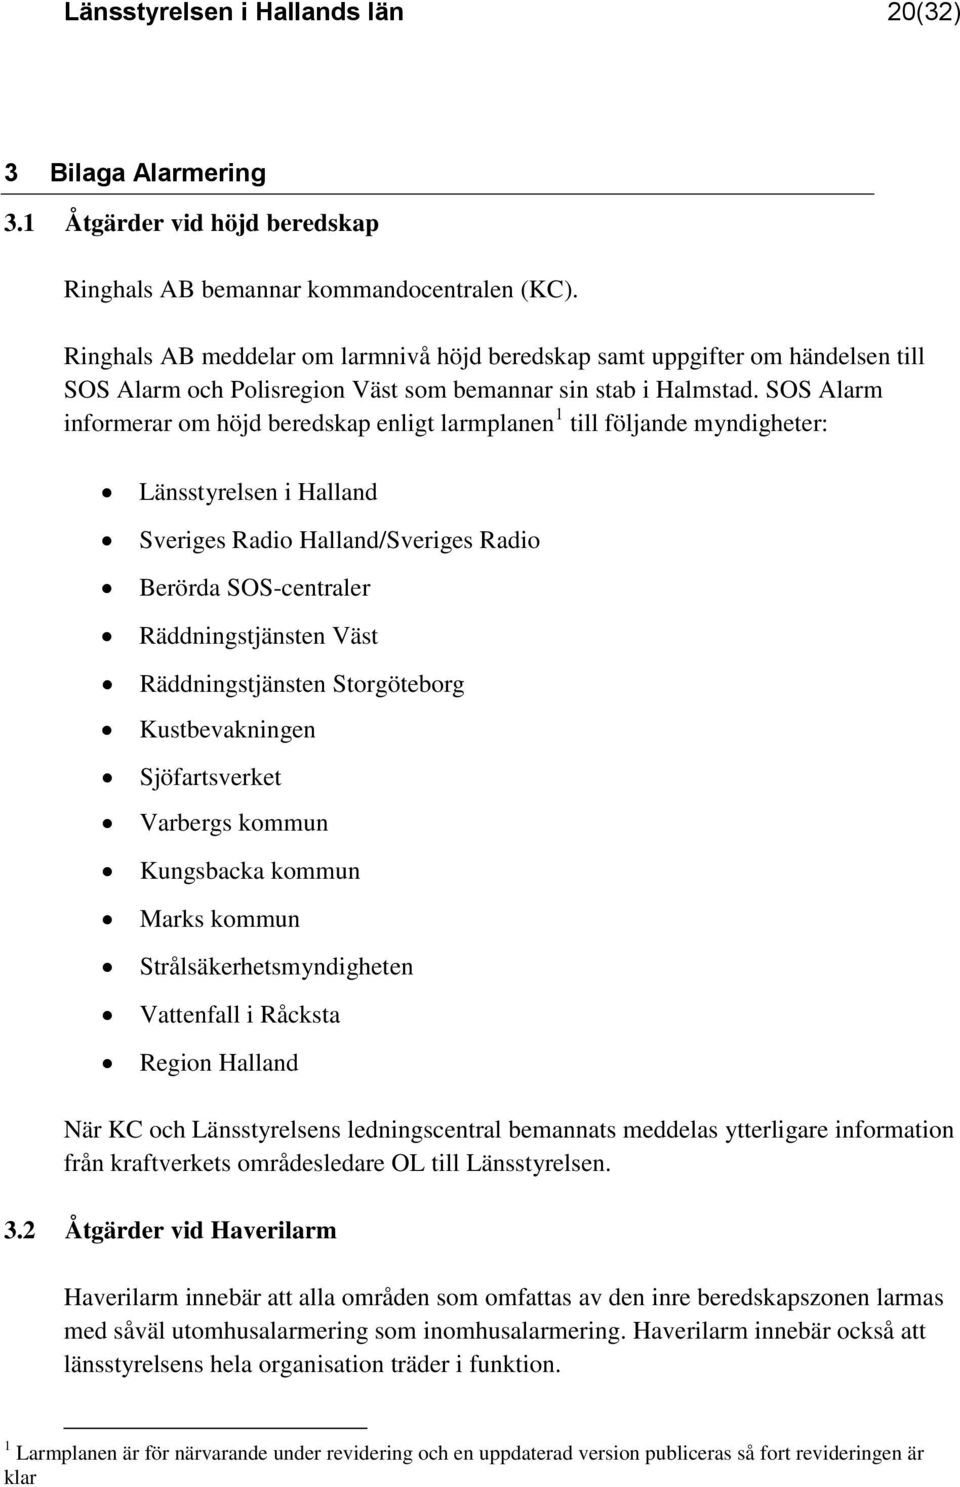 SOS Alarm informerar om höjd beredskap enligt larmplanen 1 till följande myndigheter: Länsstyrelsen i Halland Sveriges Radio Halland/Sveriges Radio Berörda SOS-centraler Räddningstjänsten Väst